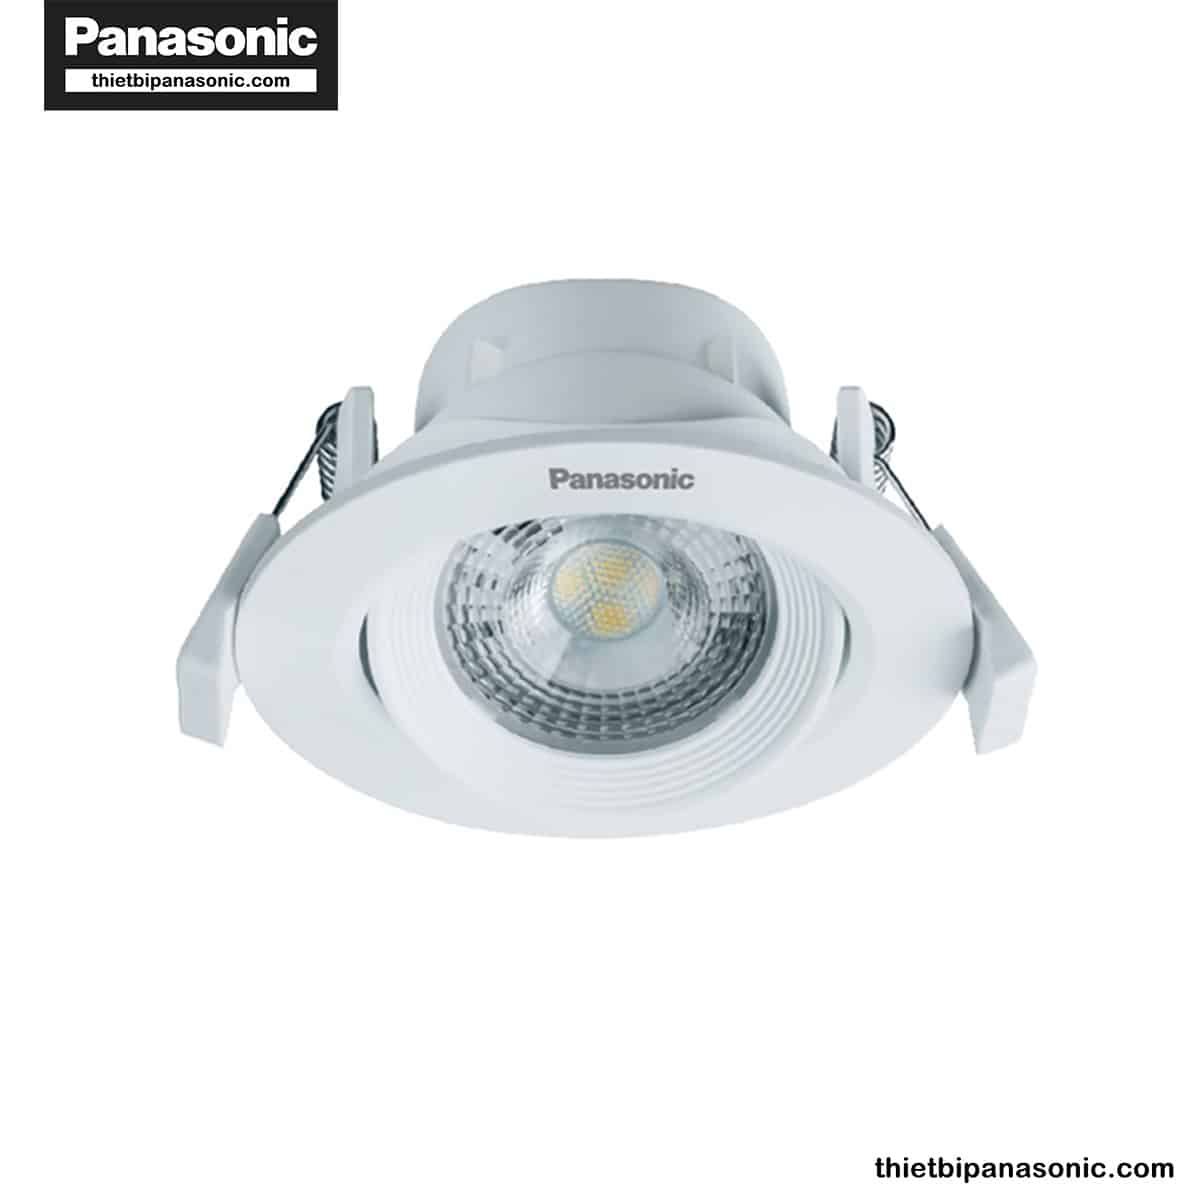 Đèn LED âm trần chỉnh góc Panasonic 5W tròn, góc chiếu 38° NNNC7630188 (ánh sáng vàng), NNNC7631188 (ánh sáng trung tính), NNNC7635188 (ánh sáng trắng)